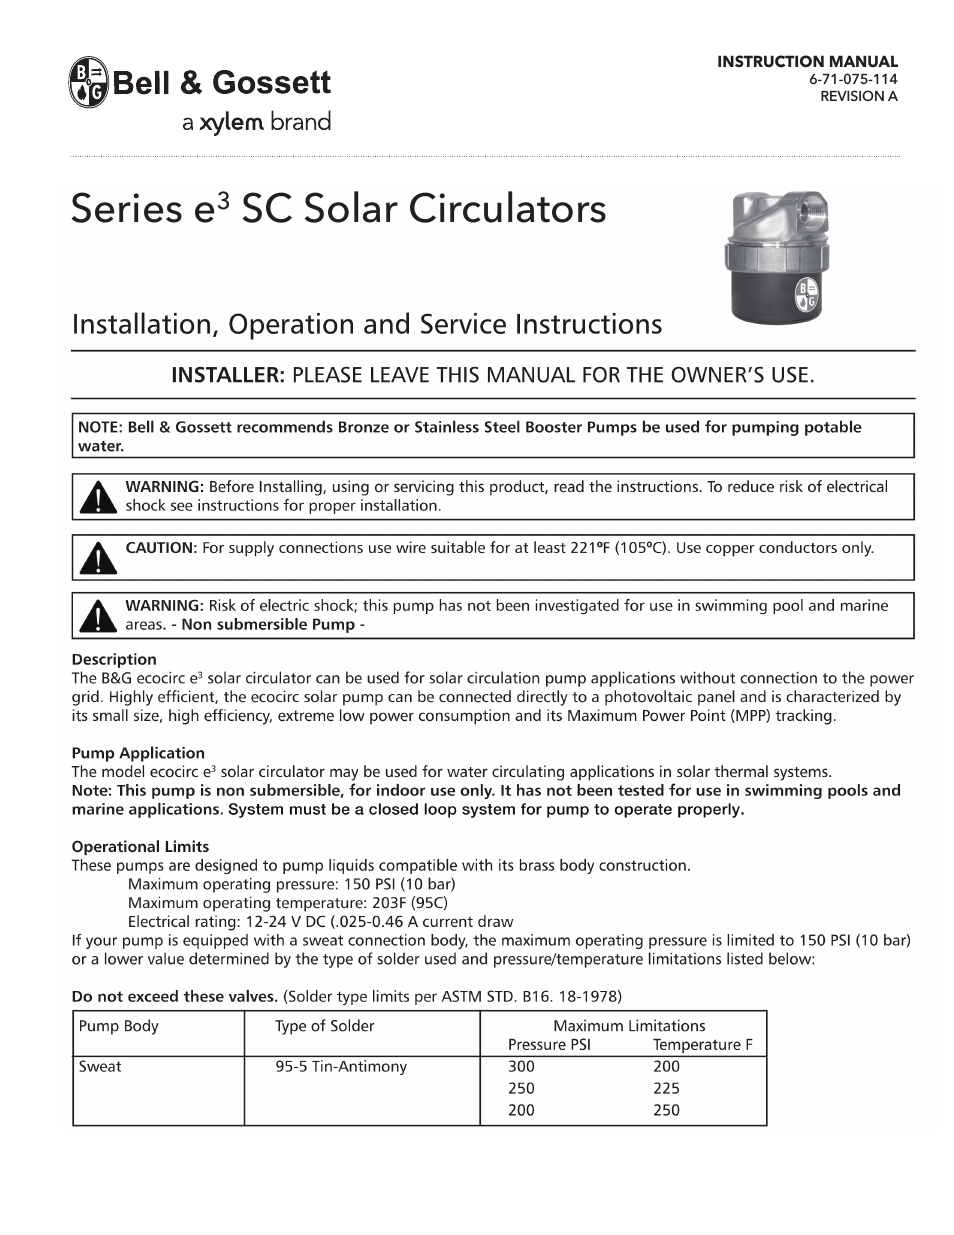 6 71 075 114A Series e3 SC Solar Circulators